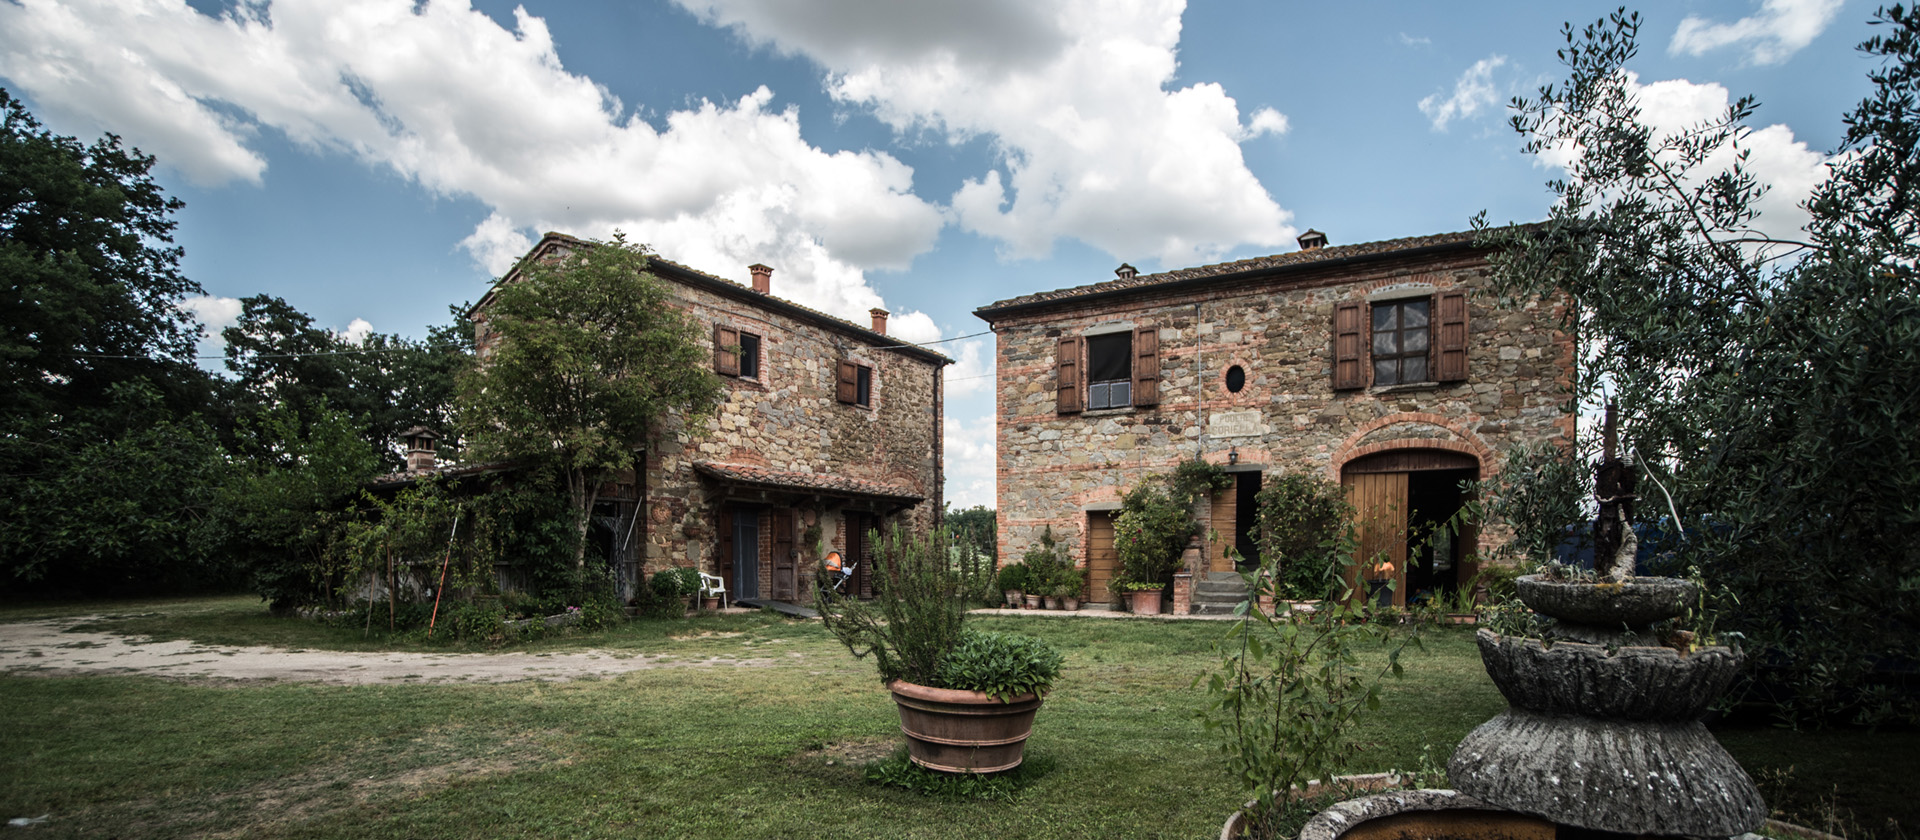 2899 - Antico casale in buone condizioni con dependance e ha.4 di terreno a Lucignano (AR).